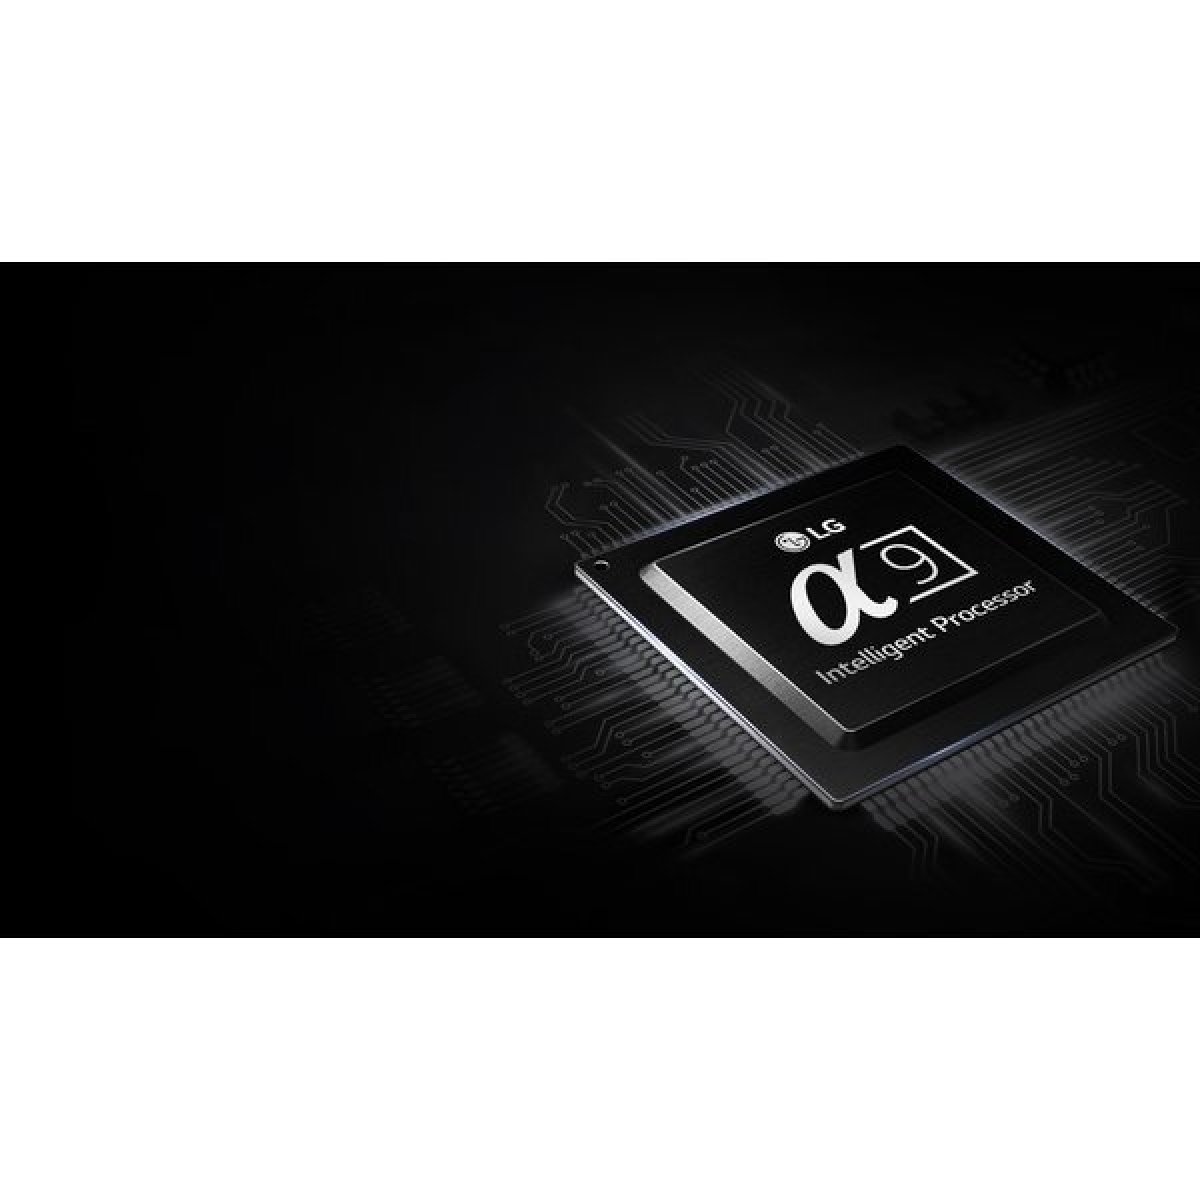 Optimalizovaný inteligentní procesor α9 pro LG OLED TV